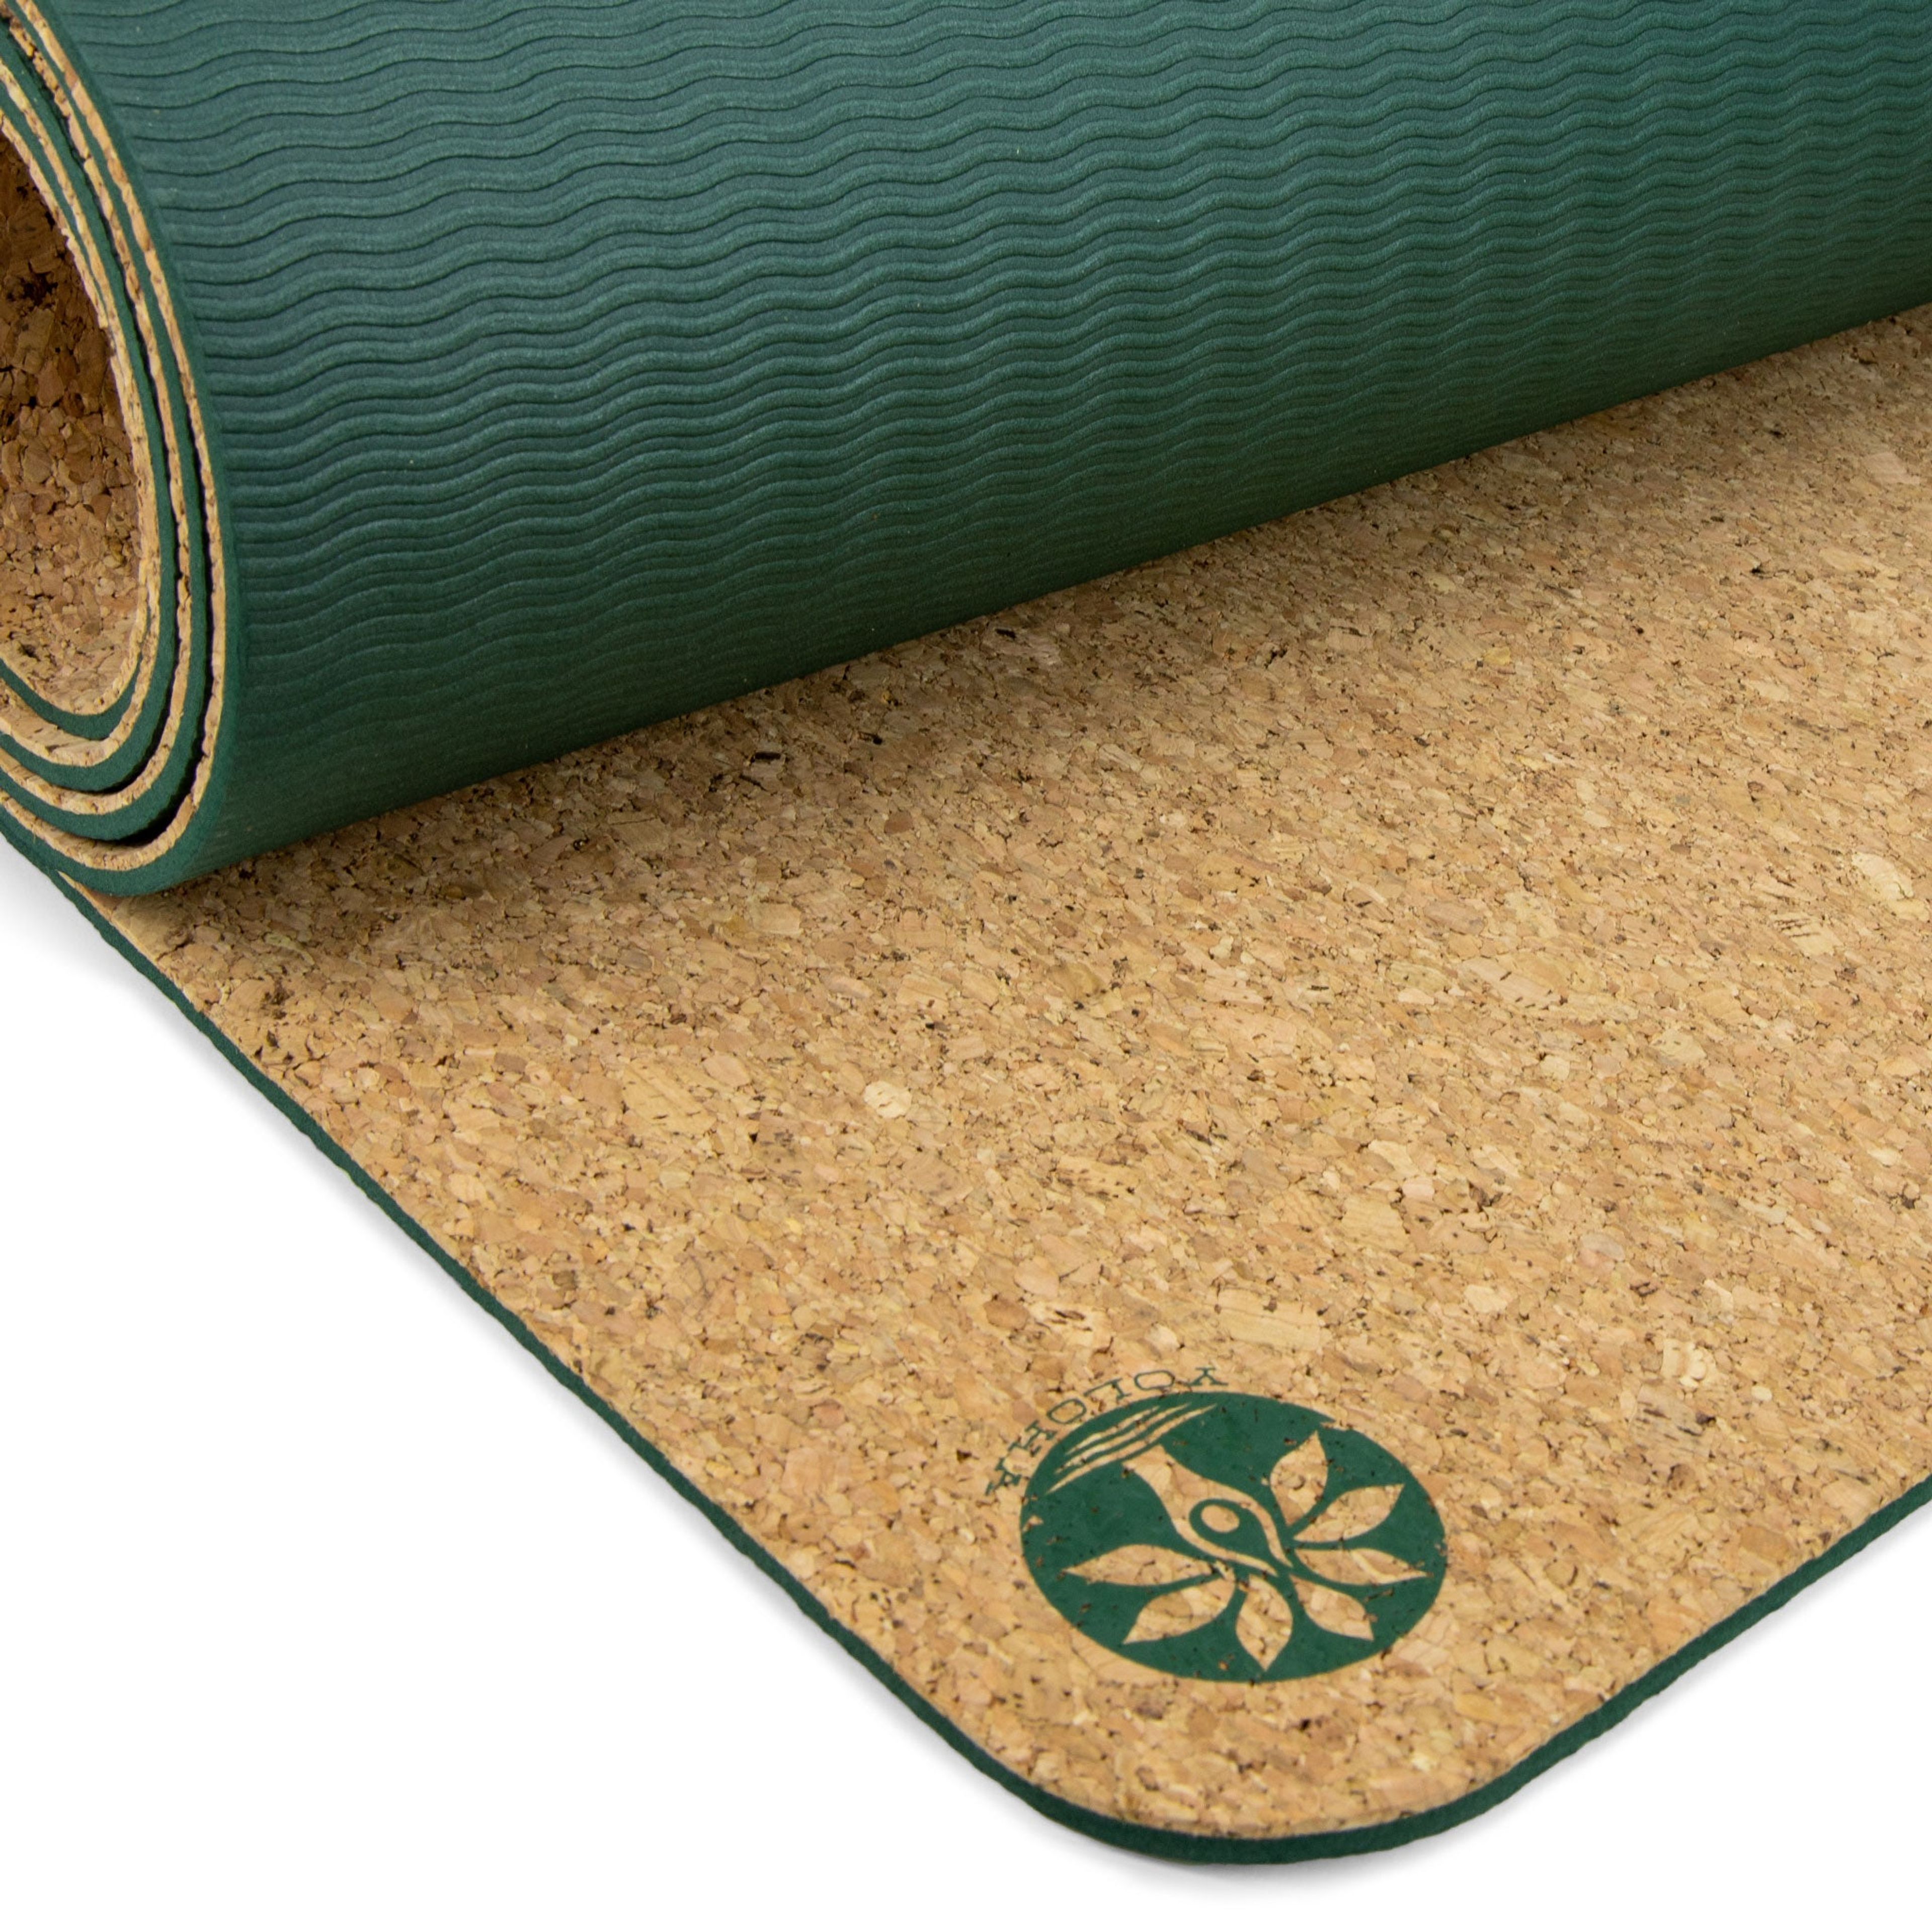 Original Cork Yoga Mat